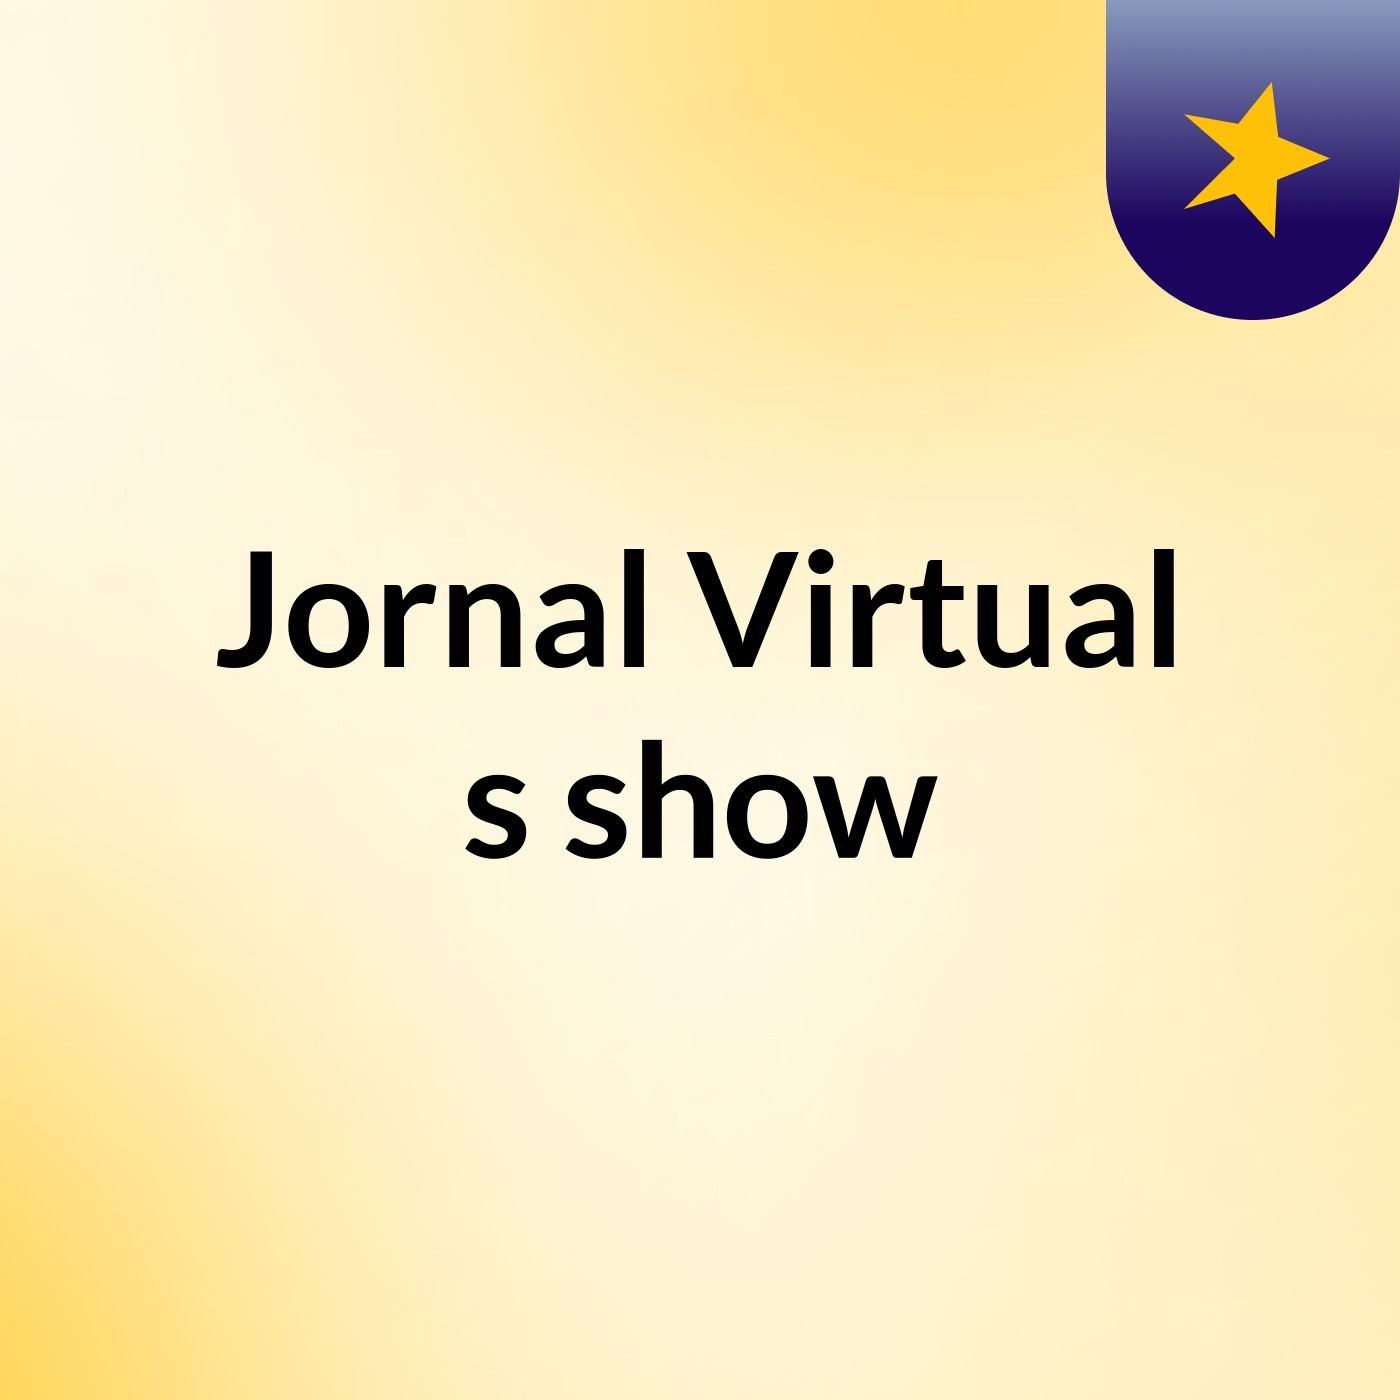 Jornal Virtual's show